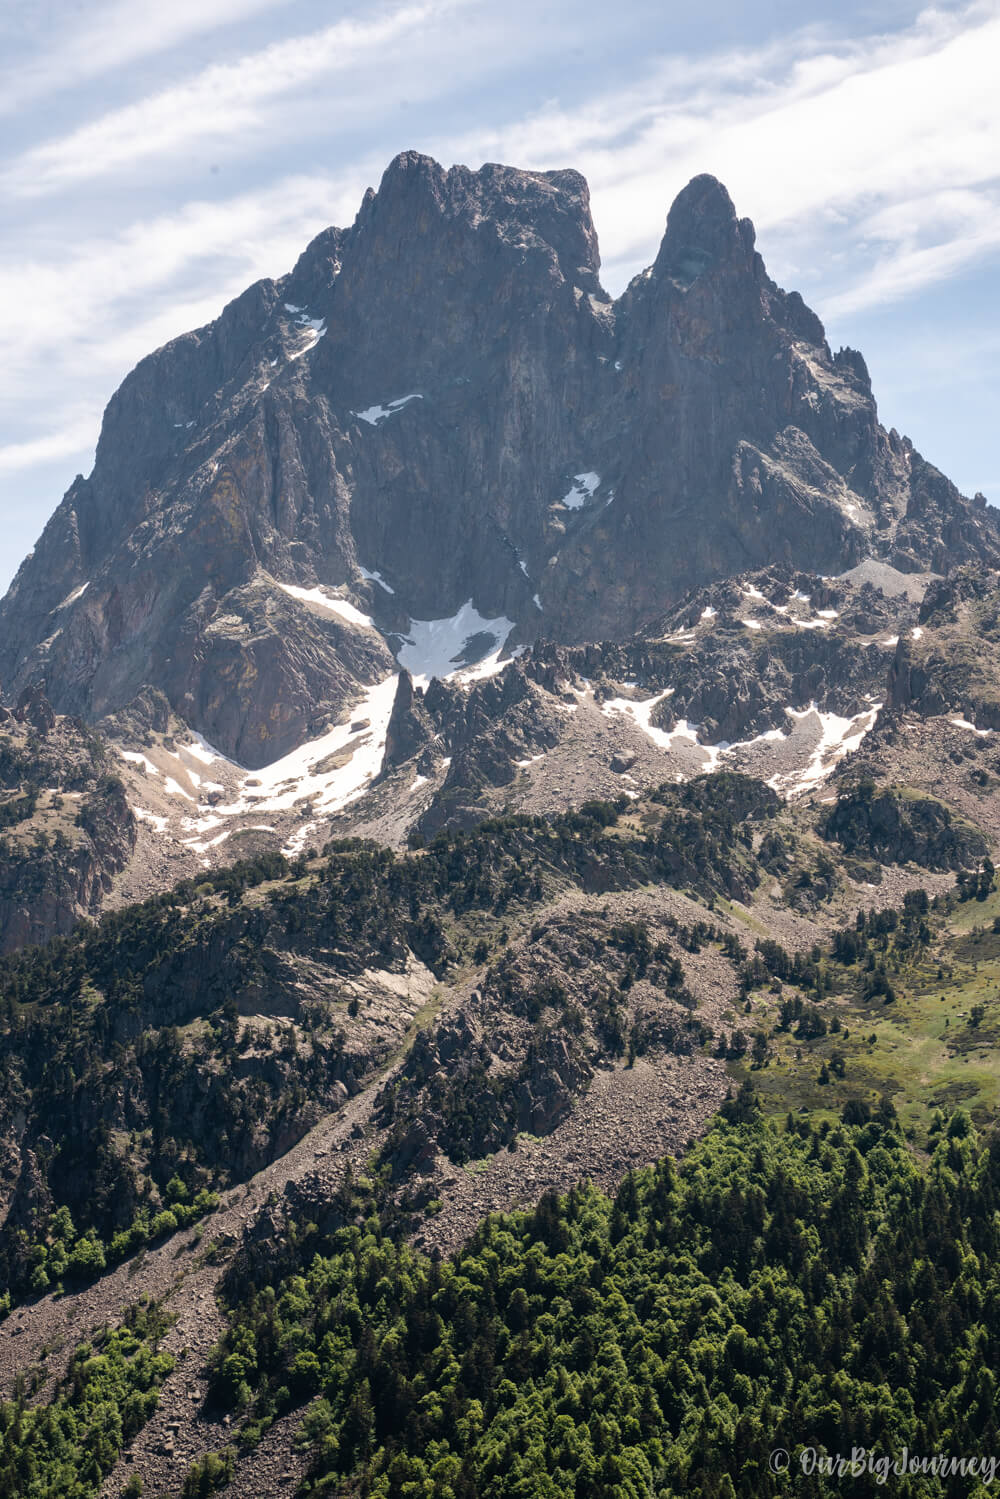 Midi d'Ossau peak